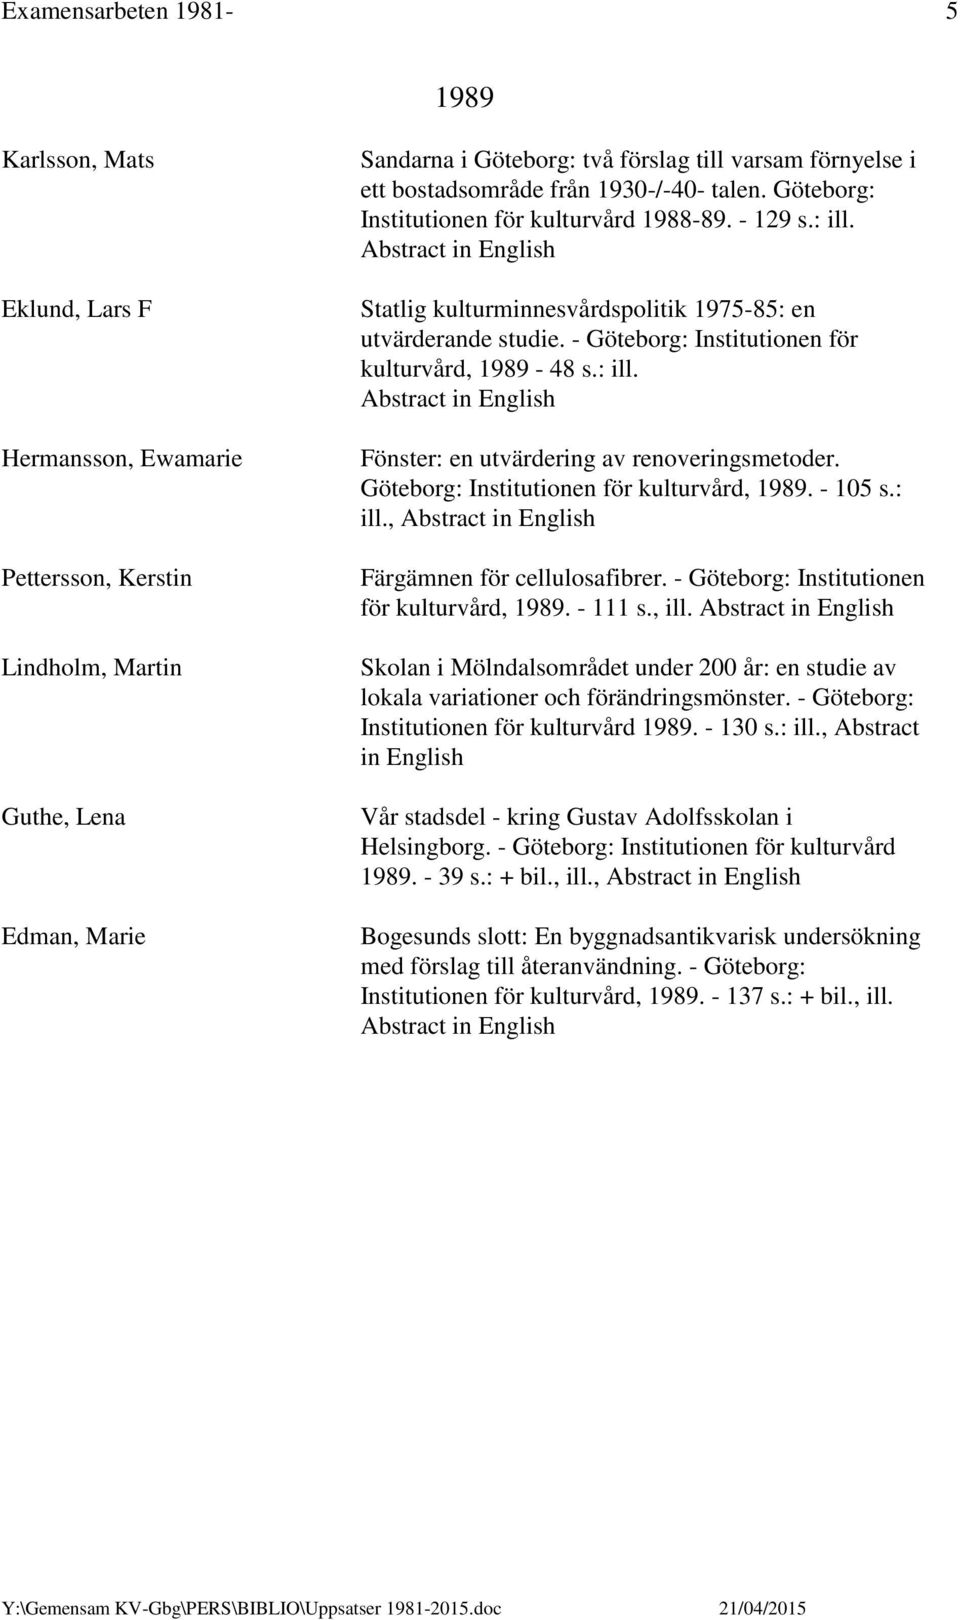 - Göteborg: Institutionen för kulturvård, 1989-48 s.: ill. Fönster: en utvärdering av renoveringsmetoder. Göteborg: Institutionen för kulturvård, 1989. - 105 s.: ill., Färgämnen för cellulosafibrer.